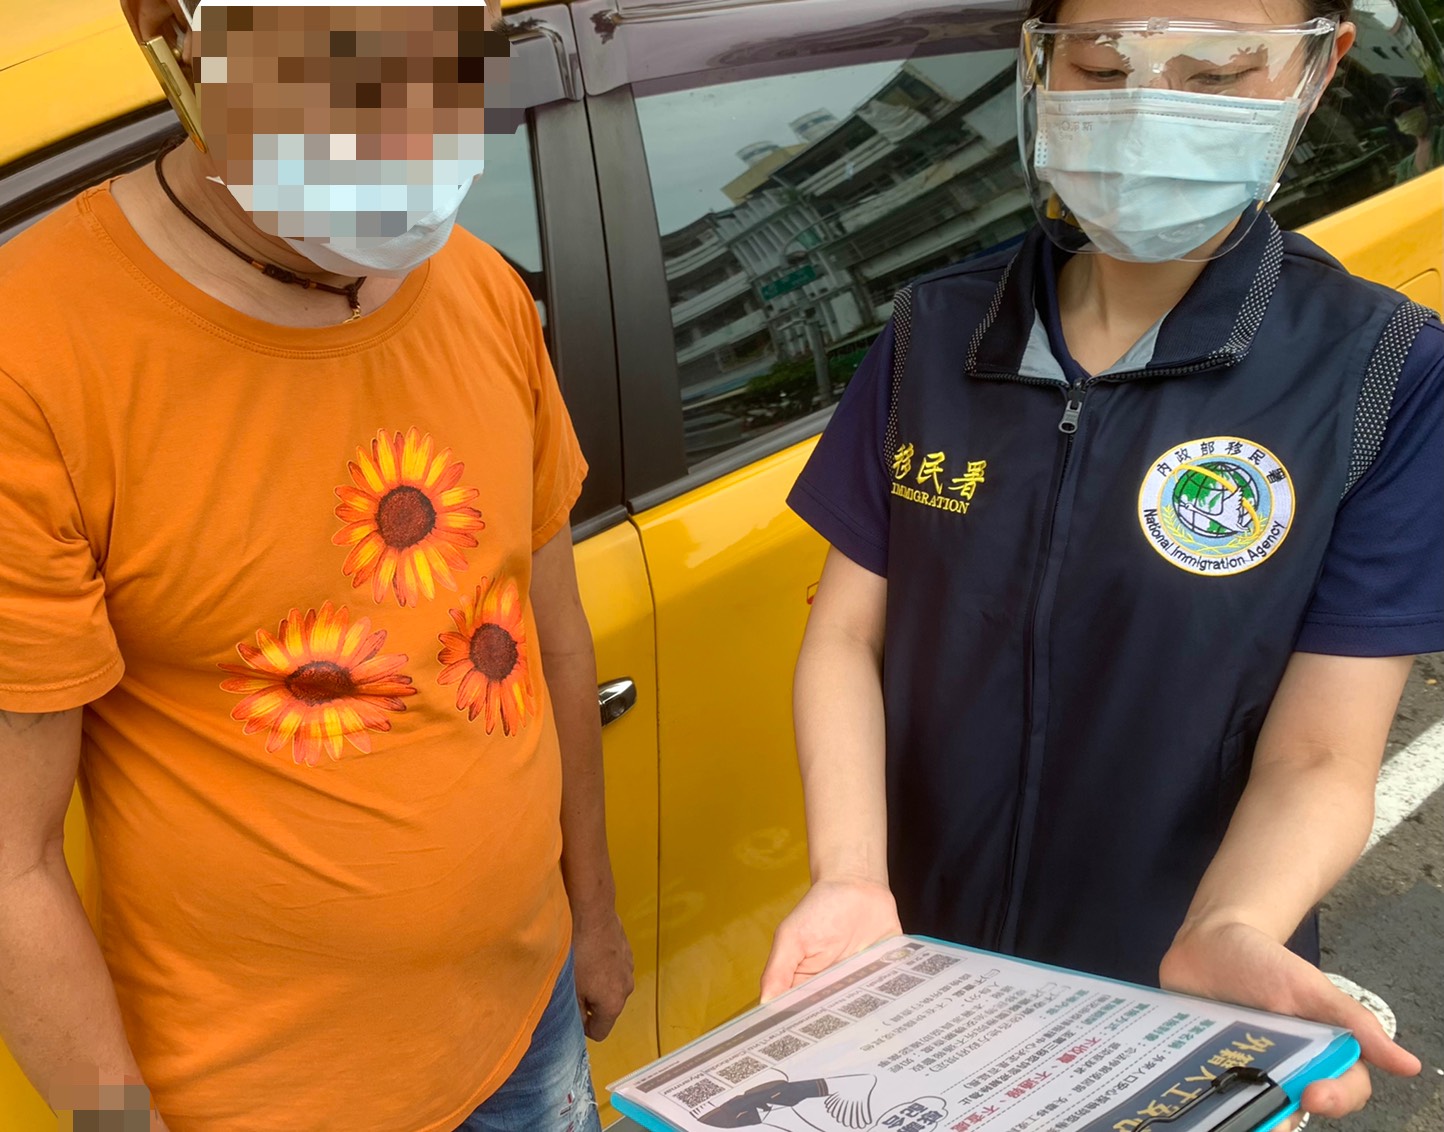 Staf khusus Kota Kaohsiung menjelaskan kepada pengemudi taksi mengenai “Proyek Warga Asing Melakukan Pemeriksaan Dengan Aman”. Sumber: Tim Tugas Khusus Kota Kaohsiung